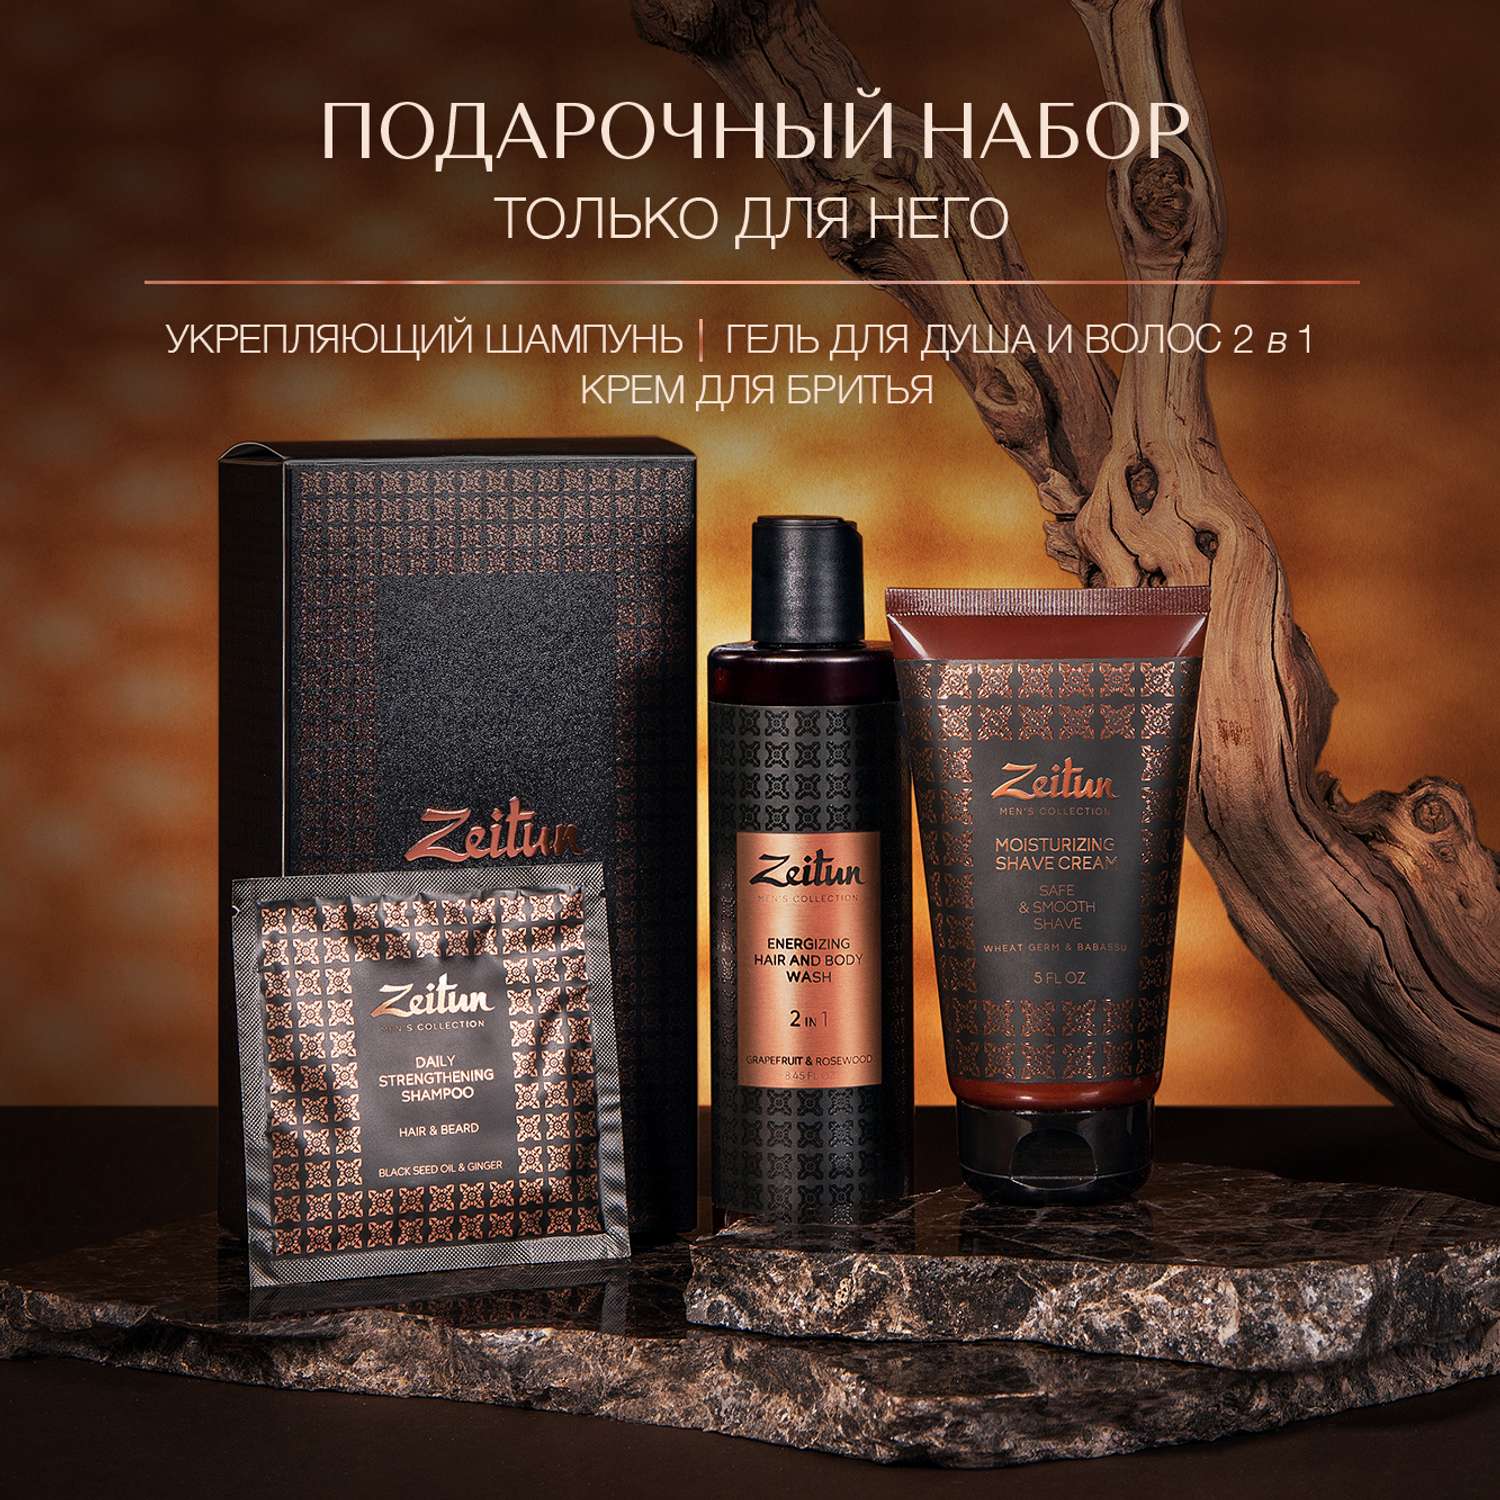 Подарочный набор Zeitun для мужчин Практичный подход шампунь гель для душа крем для бритья - фото 7